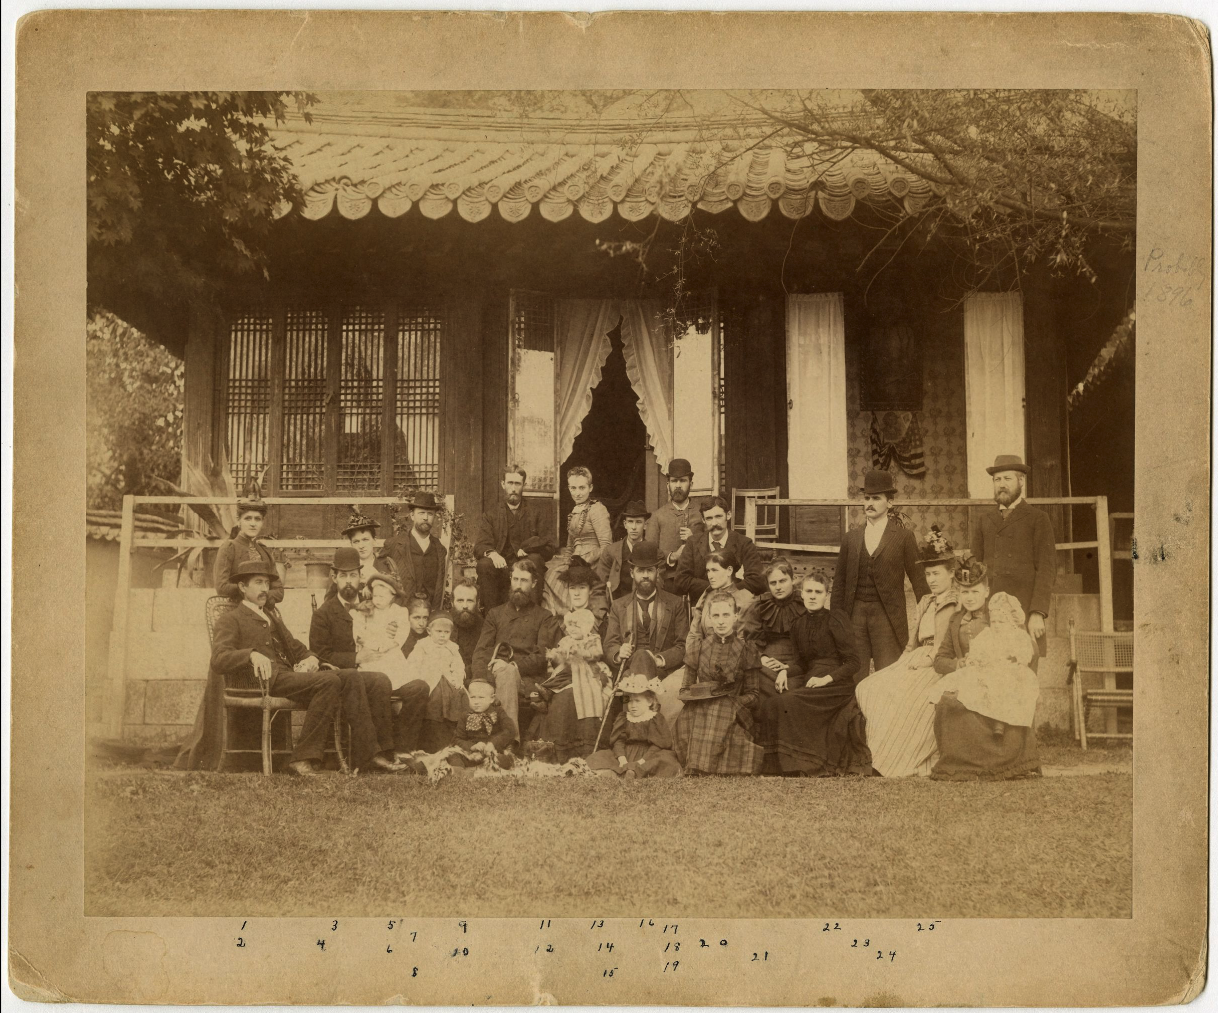 내한 장로교선교사들의 단체사진(1893년 10월)(5번이 이길함 선교사)